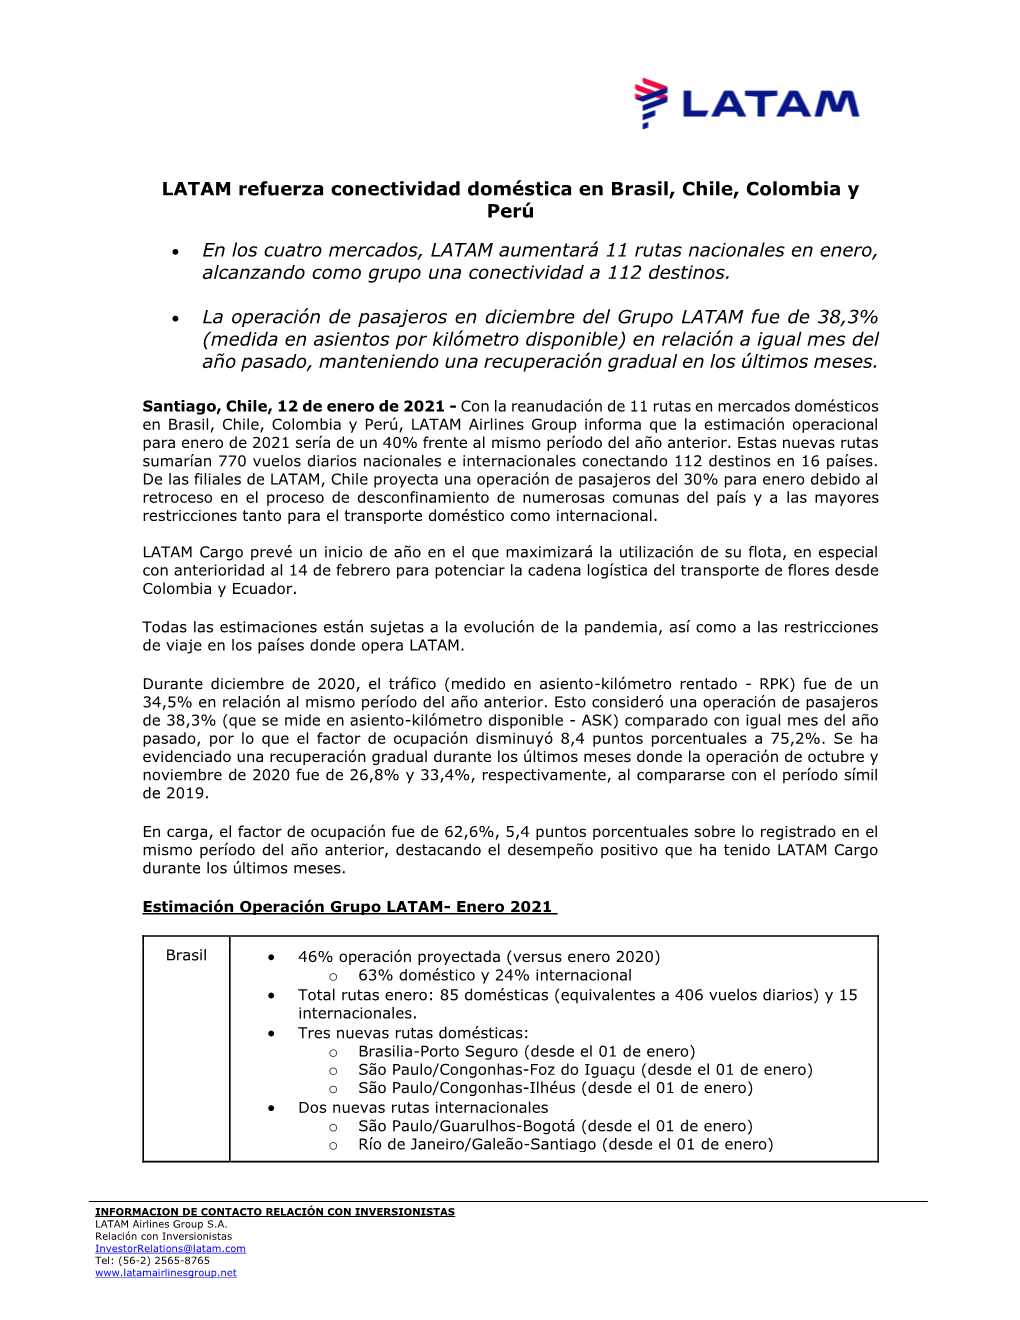 LATAM Refuerza Conectividad Doméstica En Brasil, Chile, Colombia Y Perú